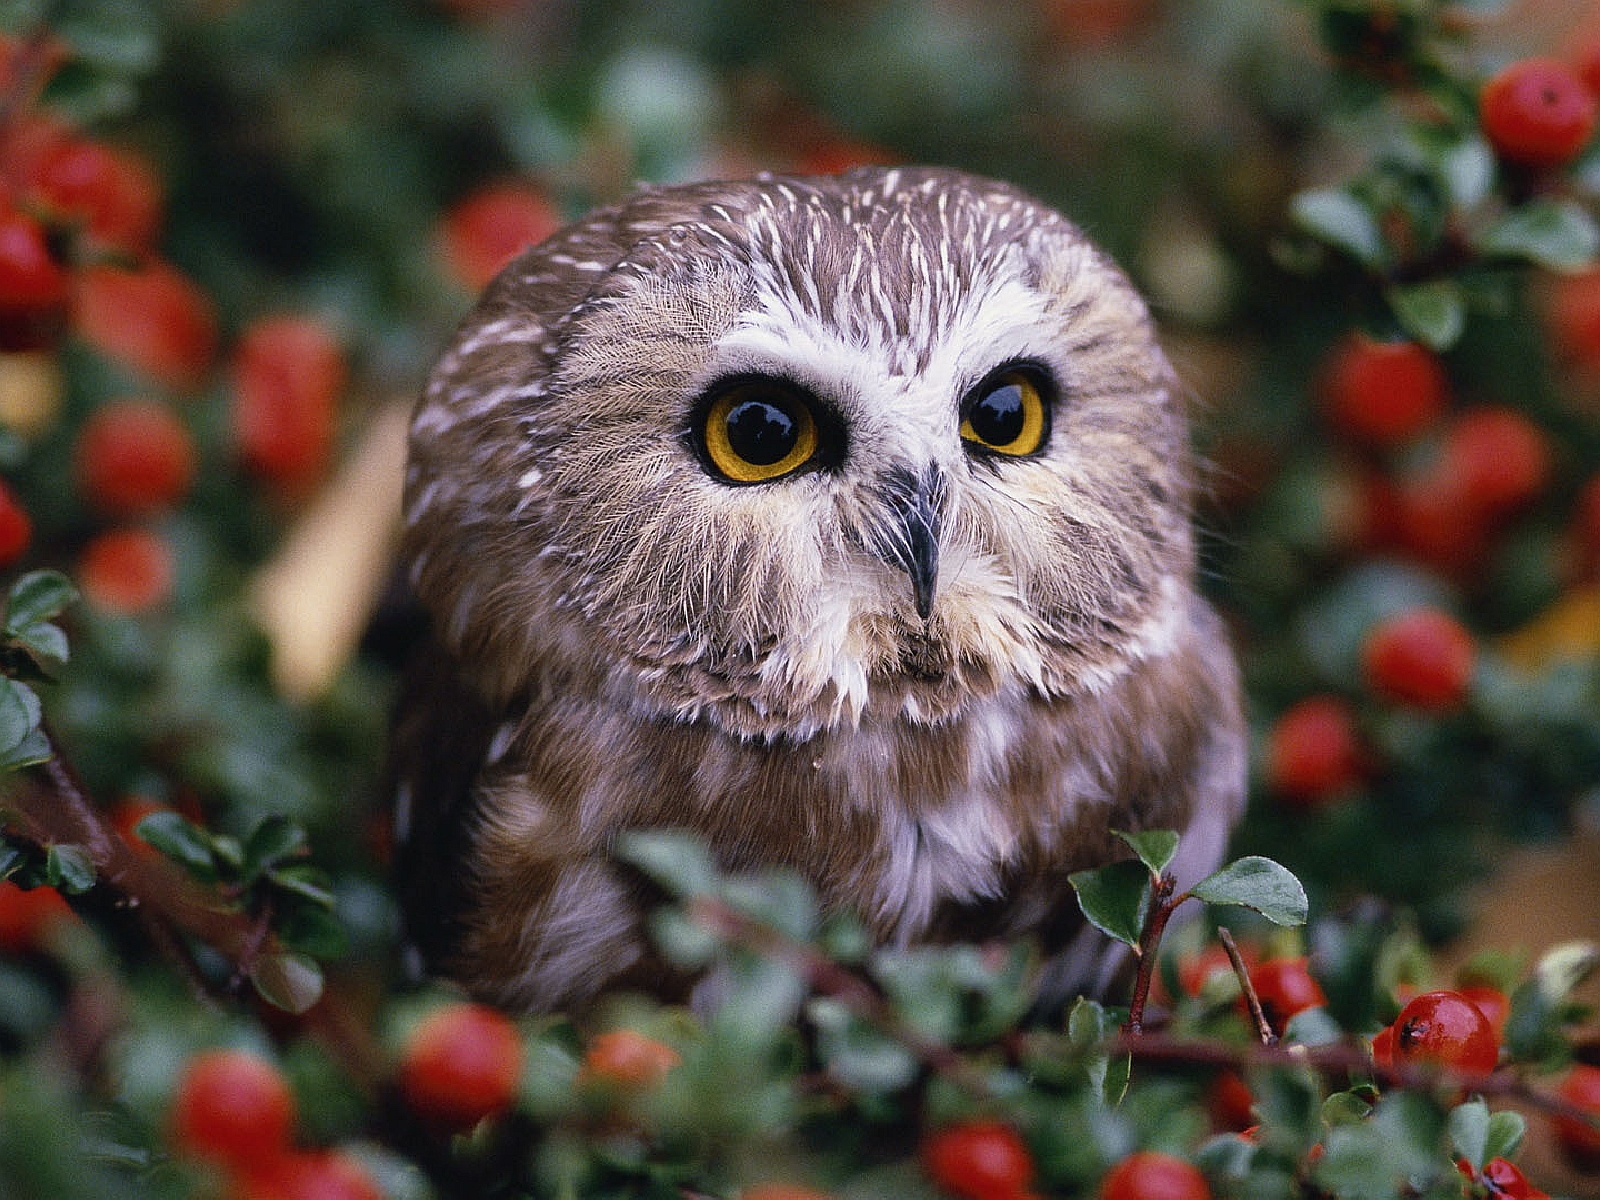 Cute Baby Owl Wallpaper - WallpaperSafari